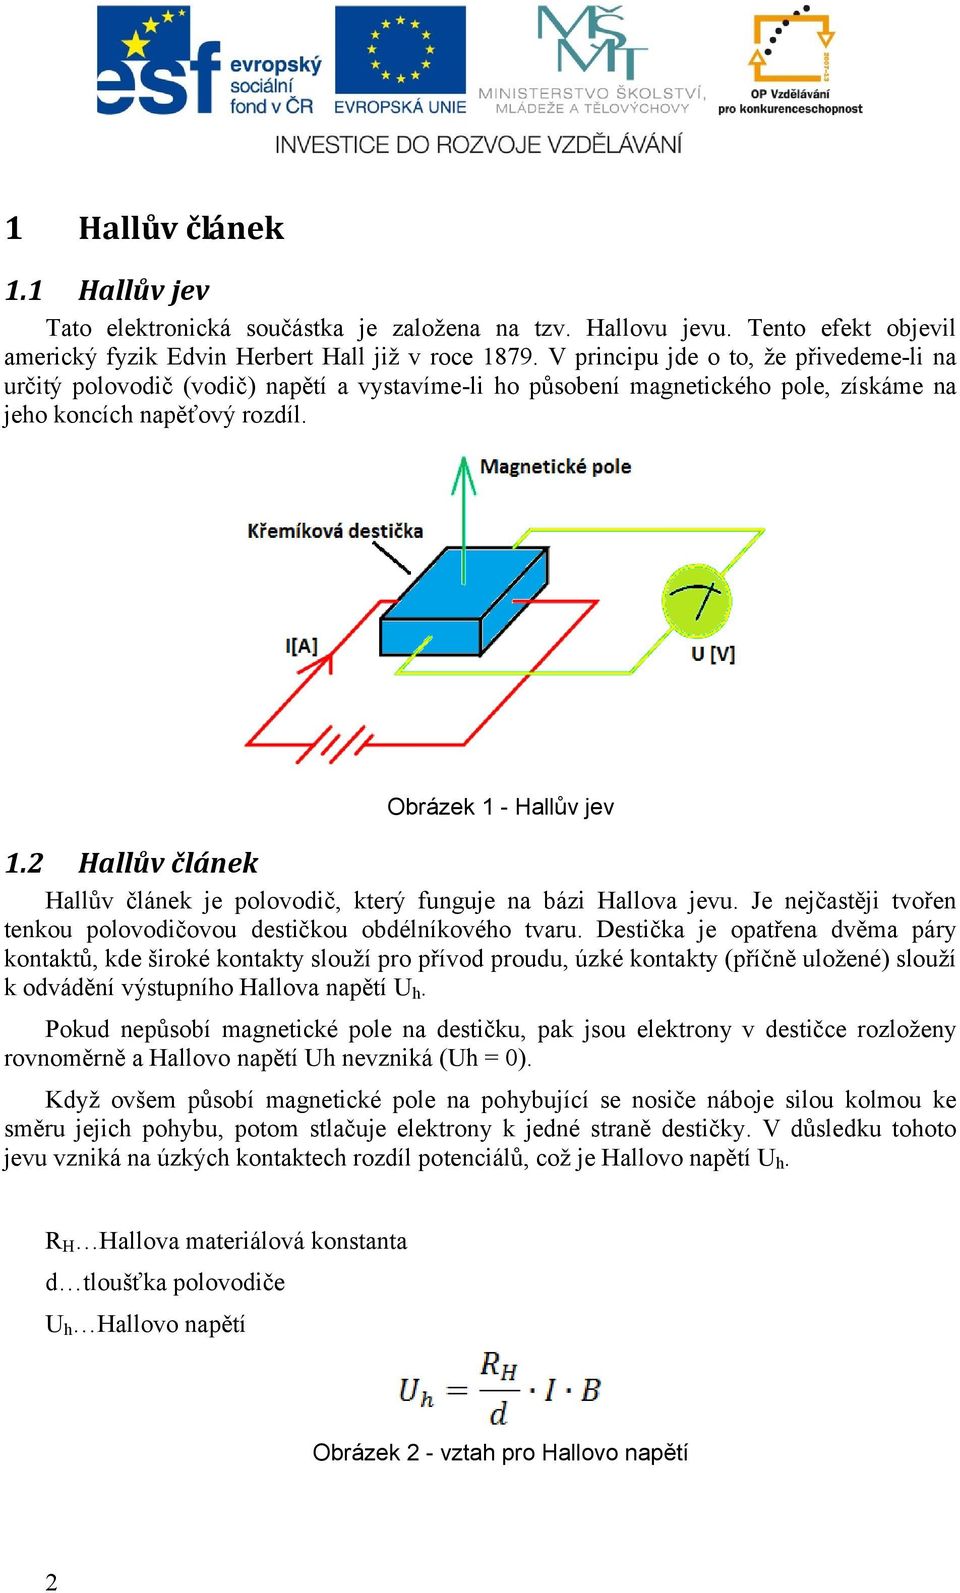 2 Hallův článek Hallův článek je polovodič, který funguje na bázi Hallova jevu. Je nejčastěji tvořen tenkou polovodičovou destičkou obdélníkového tvaru.